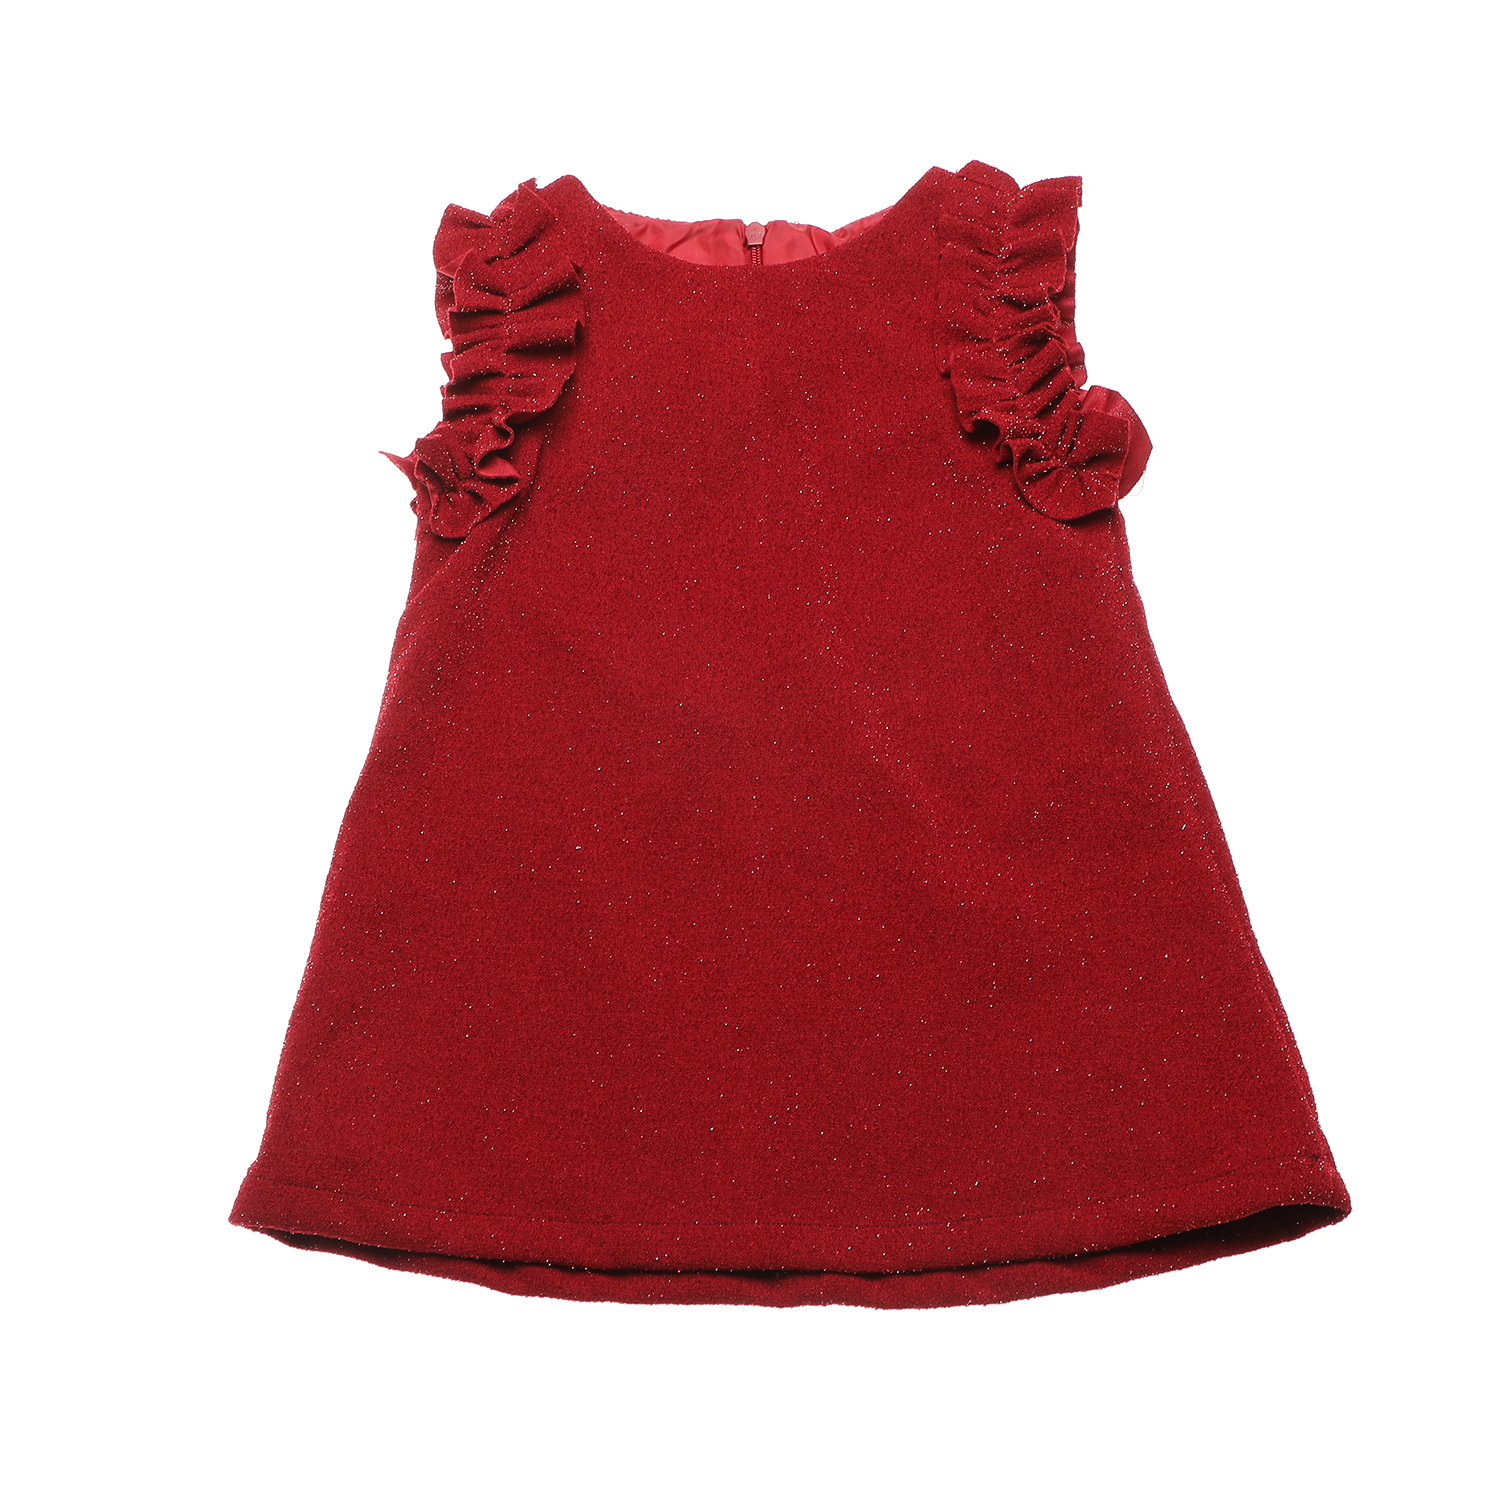 Παιδικά/Girls/Ρούχα/Φορέματα Κοντομάνικα-Αμάνικα SAM 0-13 - Παιδικό φόρεμα SAM 0-13 κόκκινο